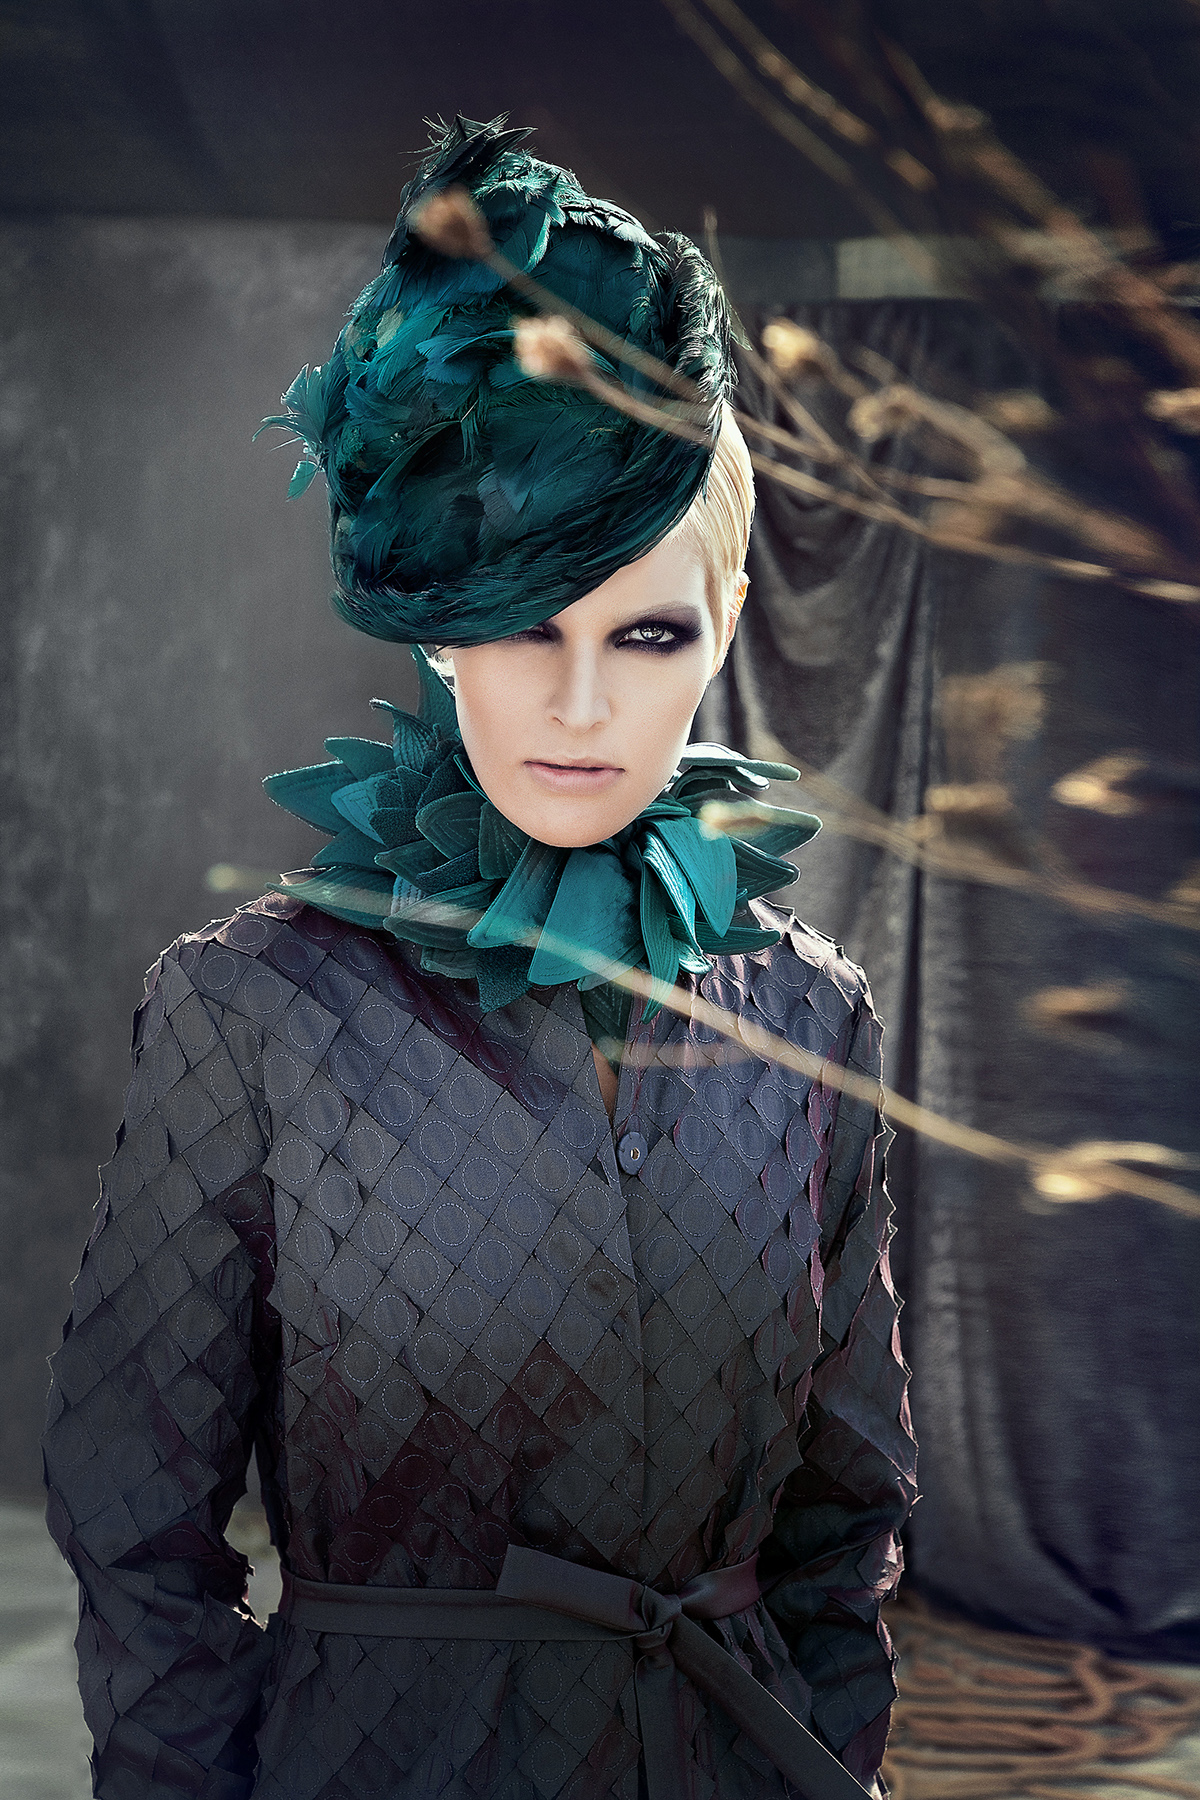 designer autruche styliste makeup hair maquillage cheveux model creatif hat clothe Mode couture mannequin austruch